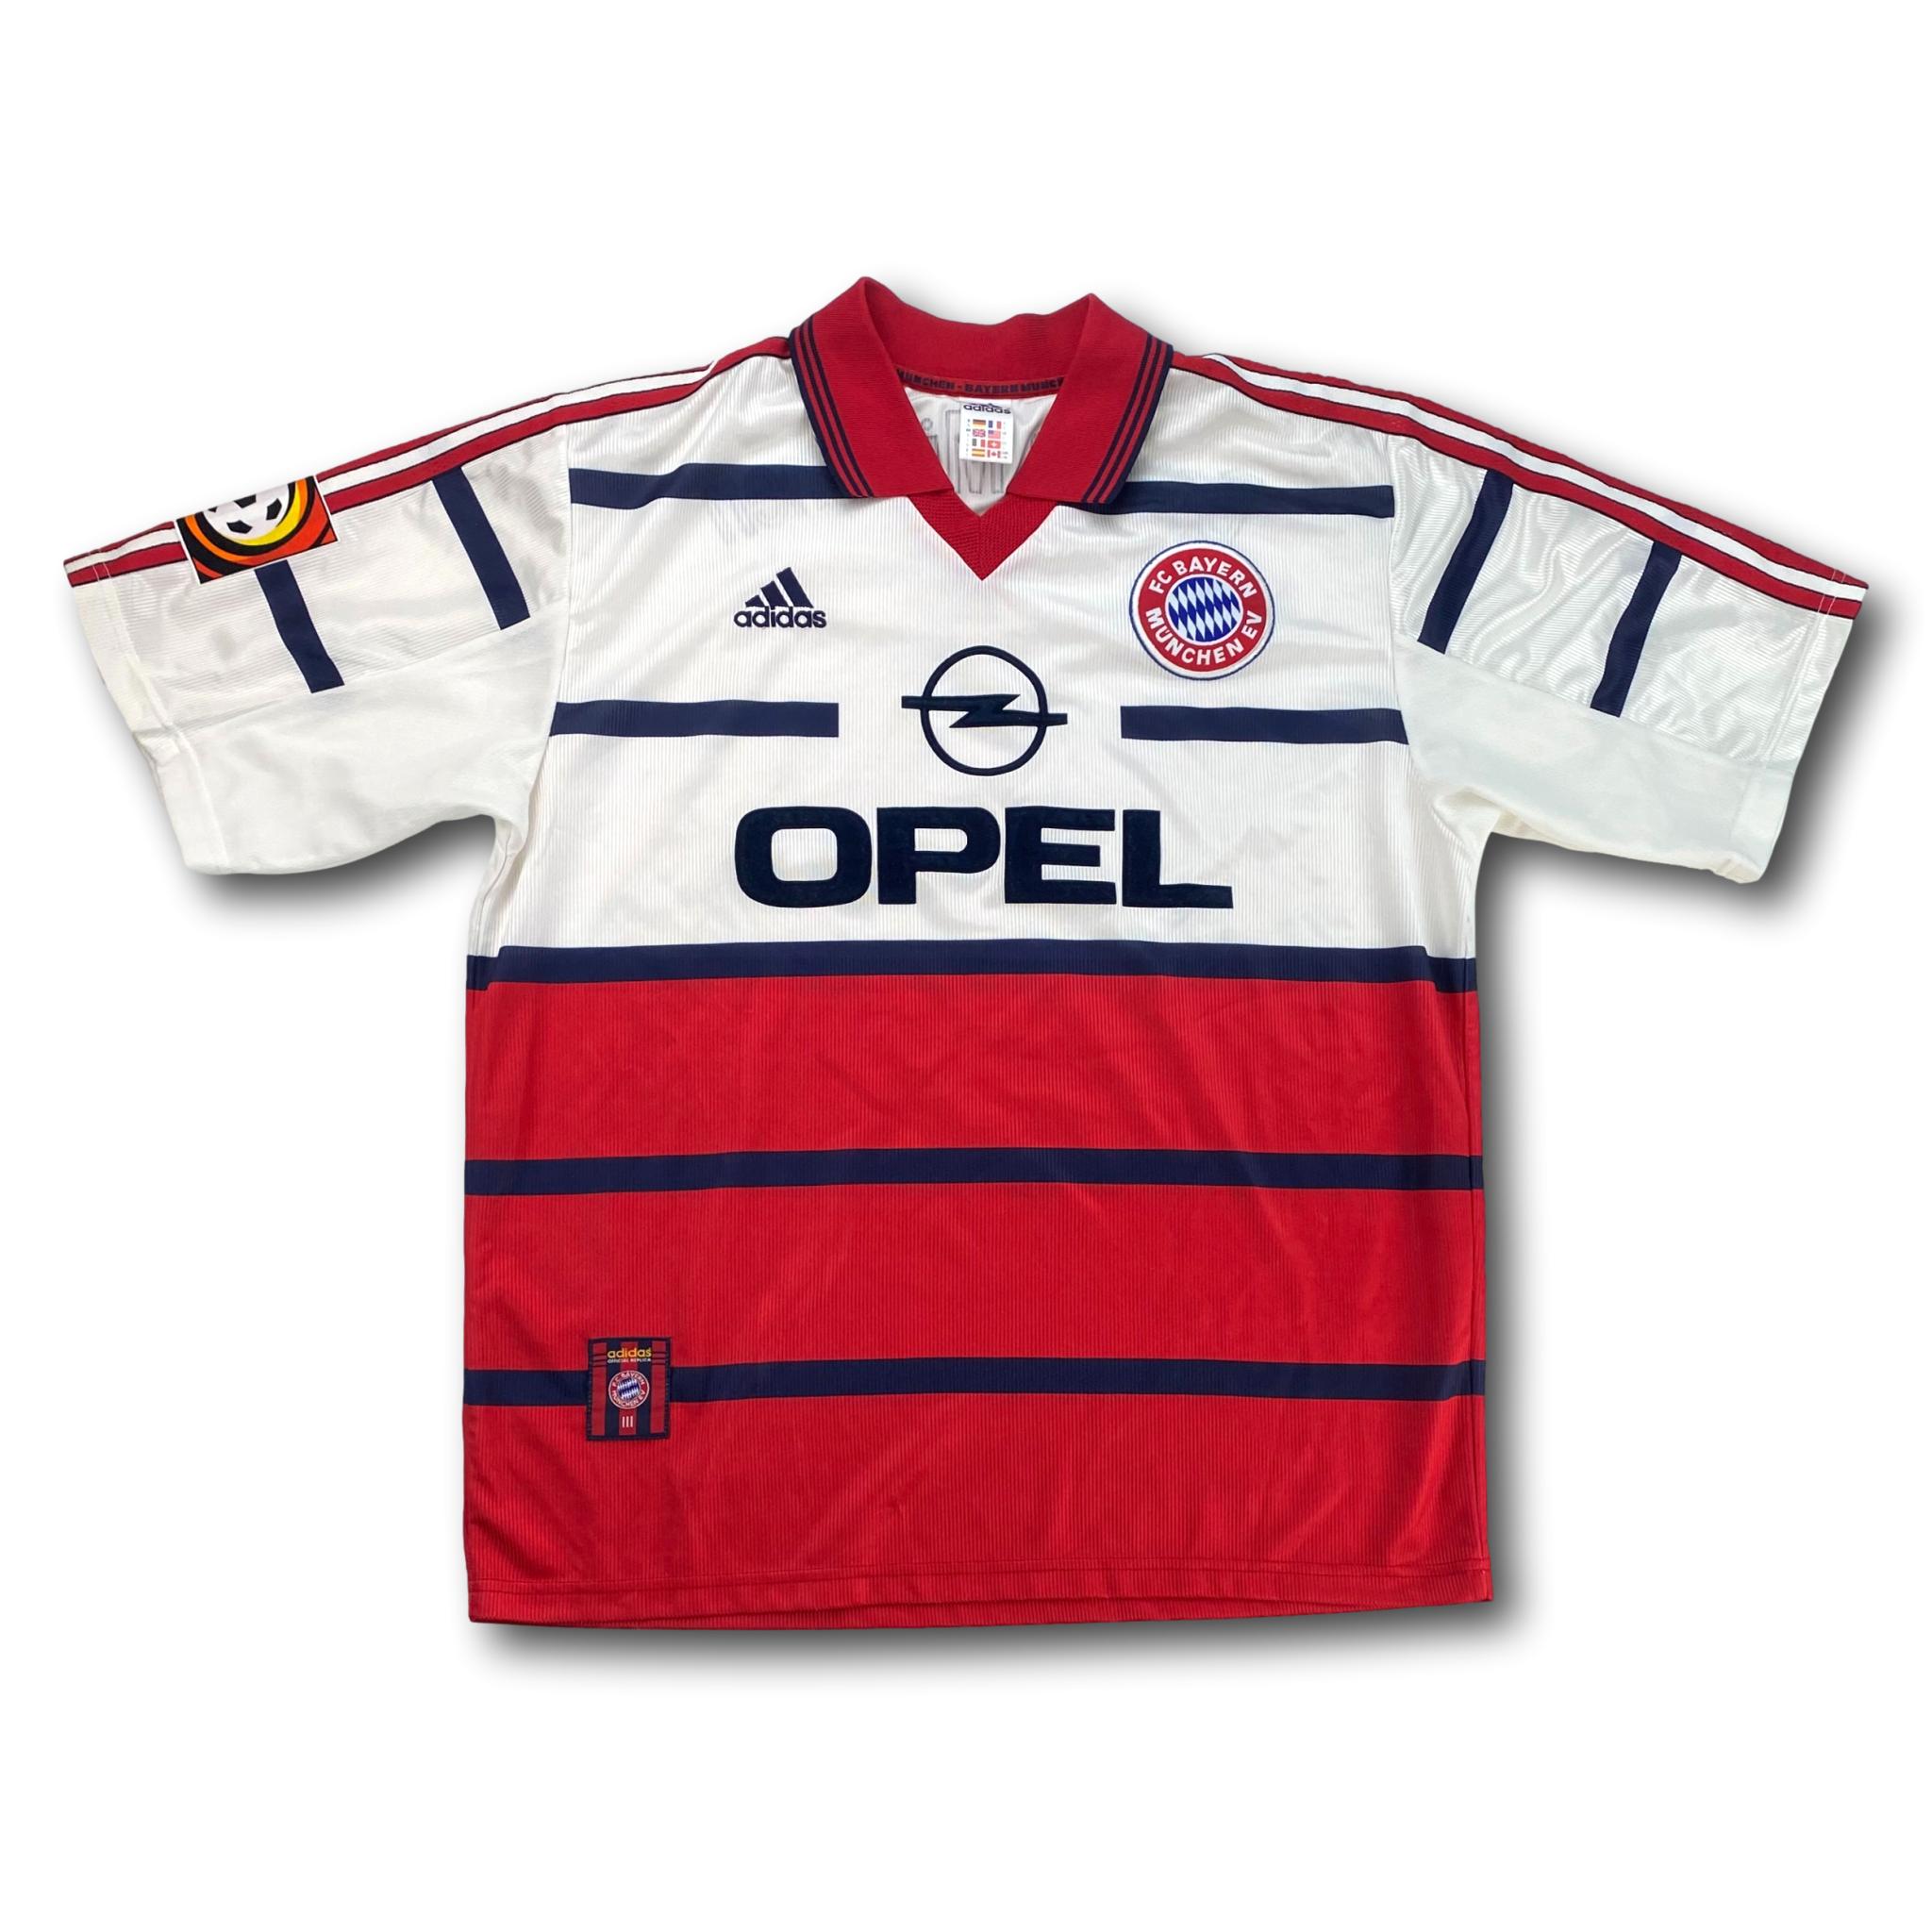 FC Bayern München 1999-2000 Auswärts L adidas